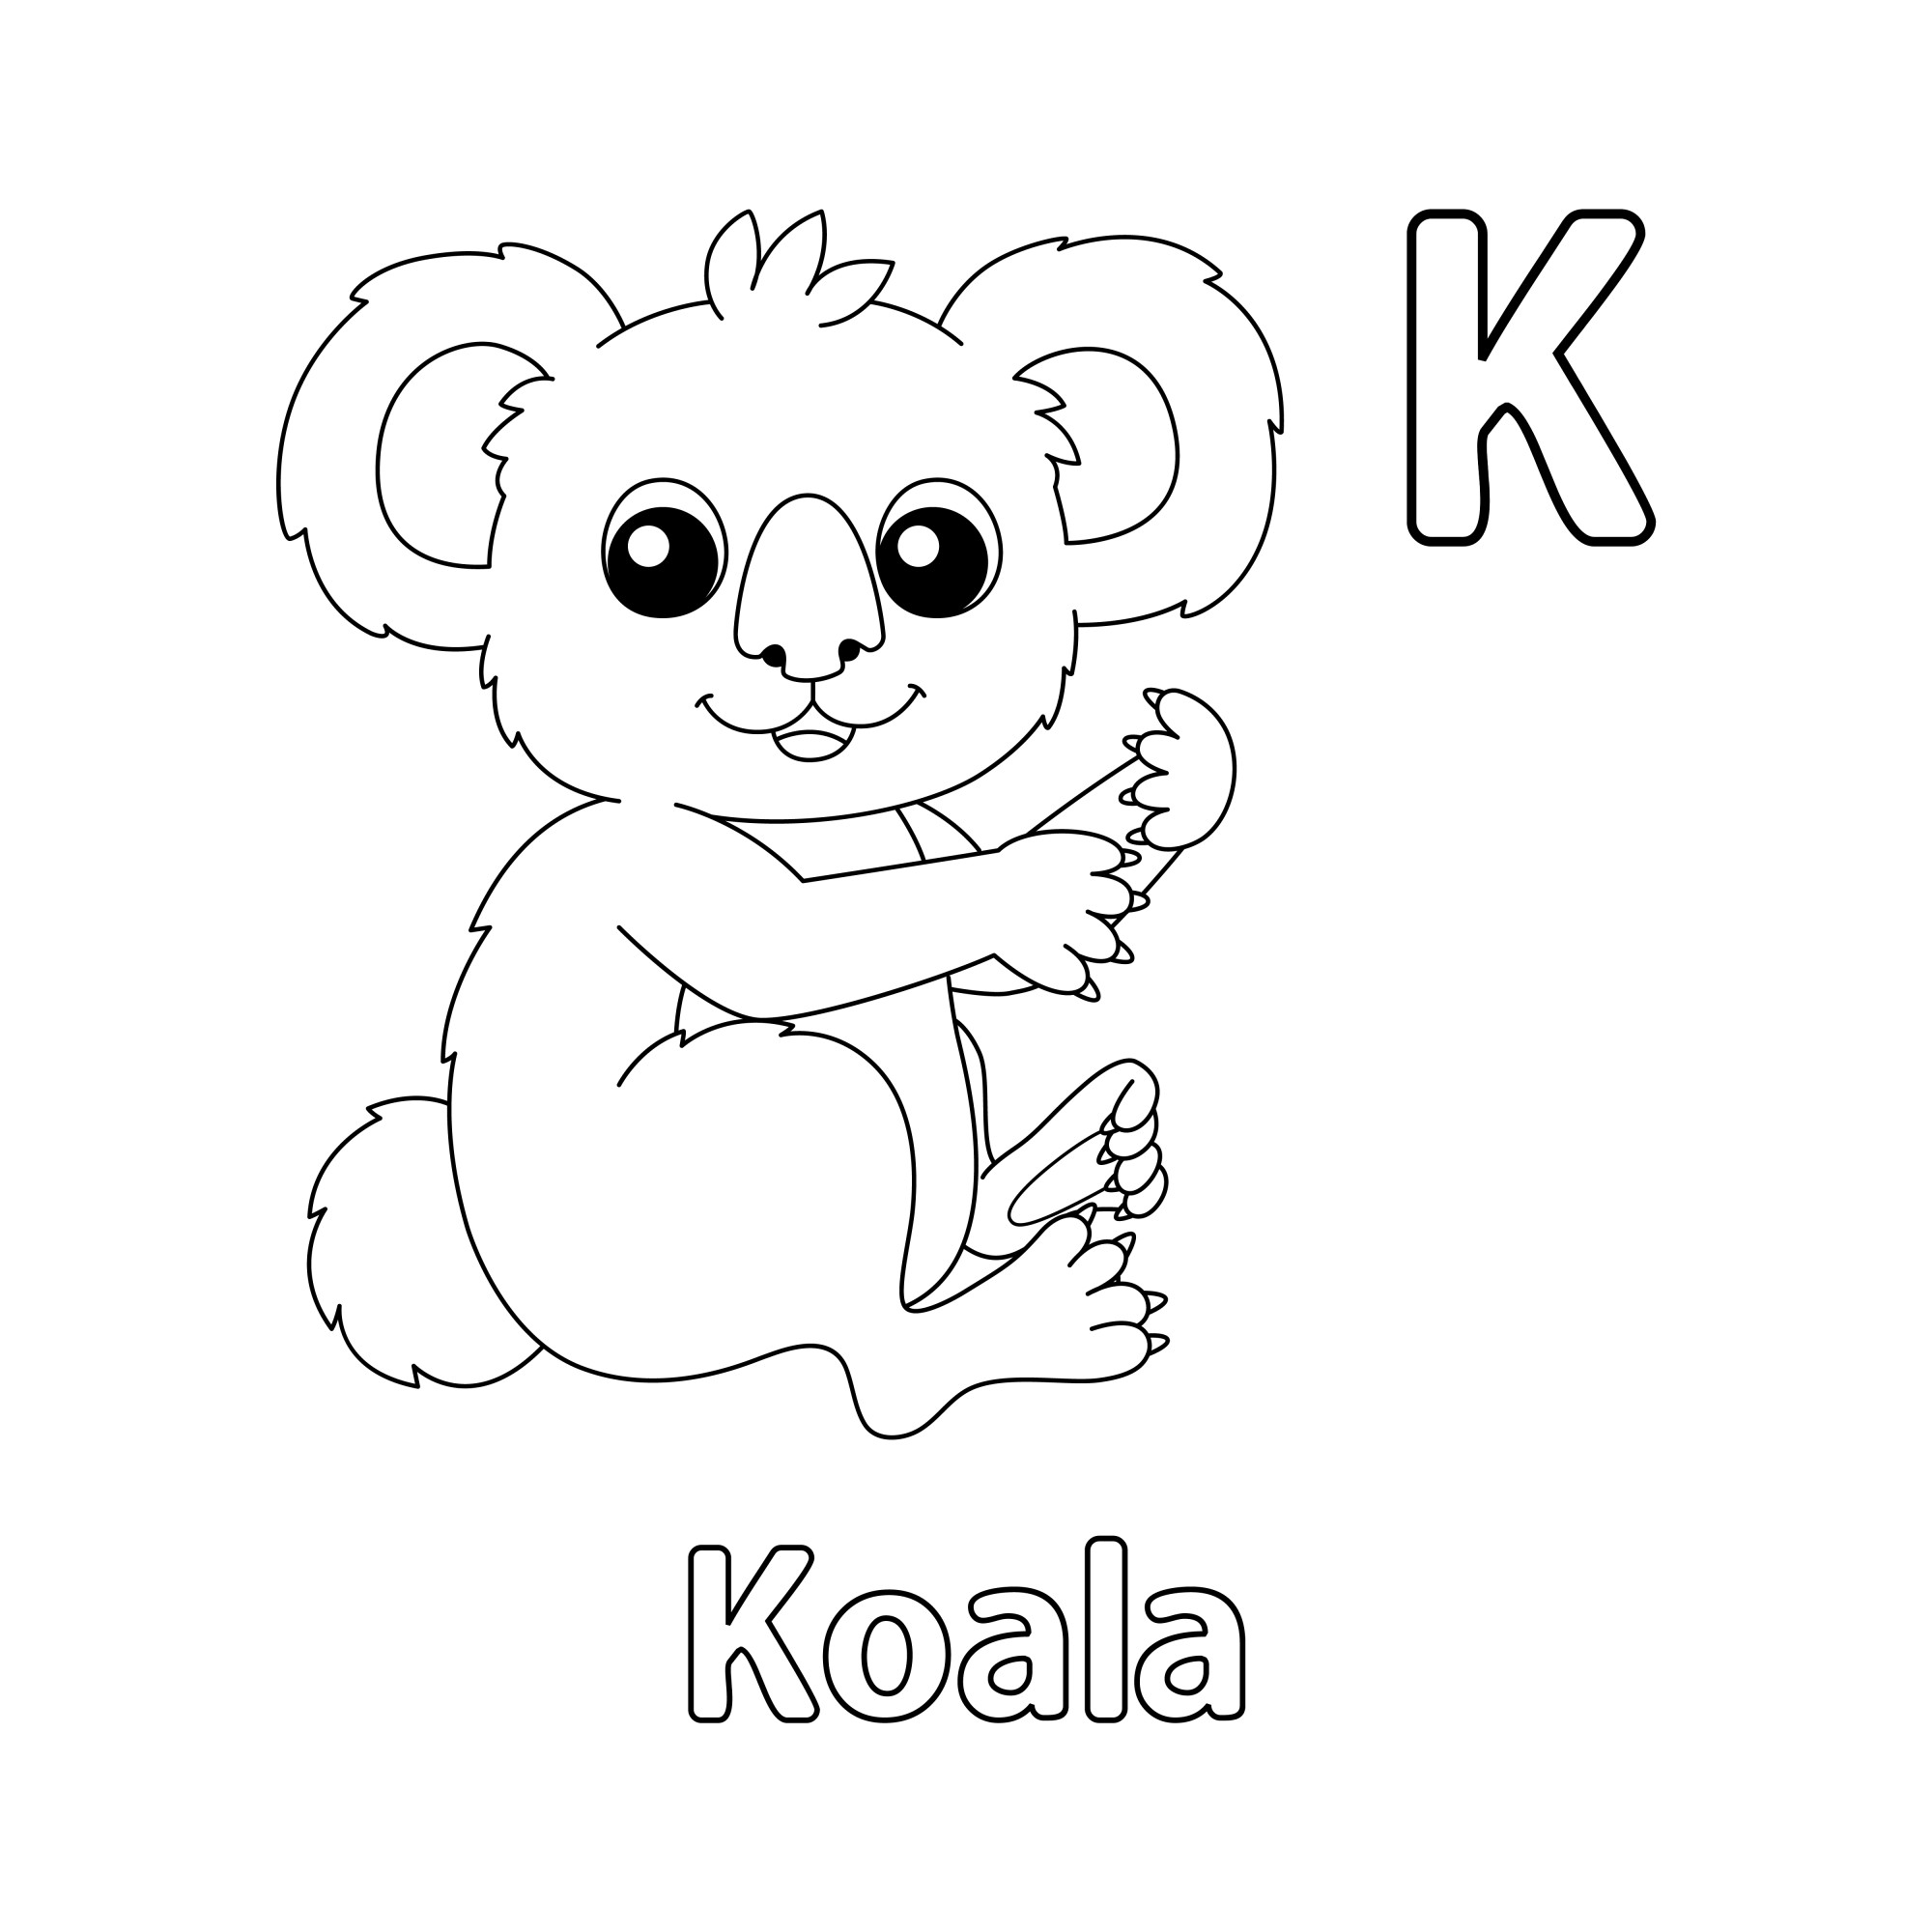 Раскраска для детей: буква K английского алфавита